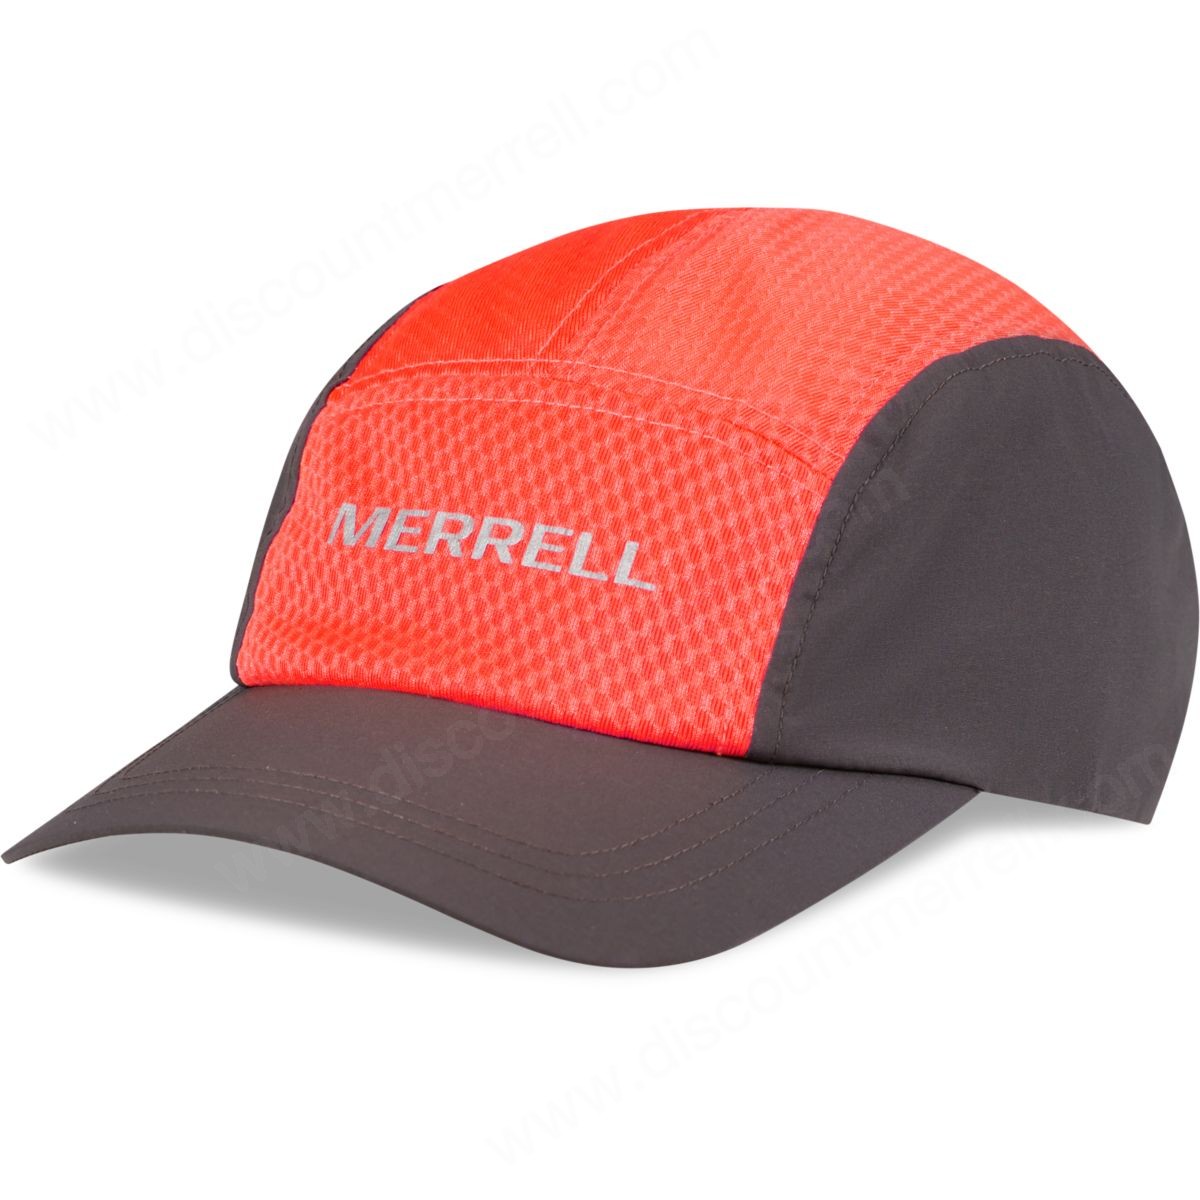 Merrell Unisex Mesh Wick Sport Hats Fiery Coral Man - Merrell Unisex Mesh Wick Sport Hats Fiery Coral Man